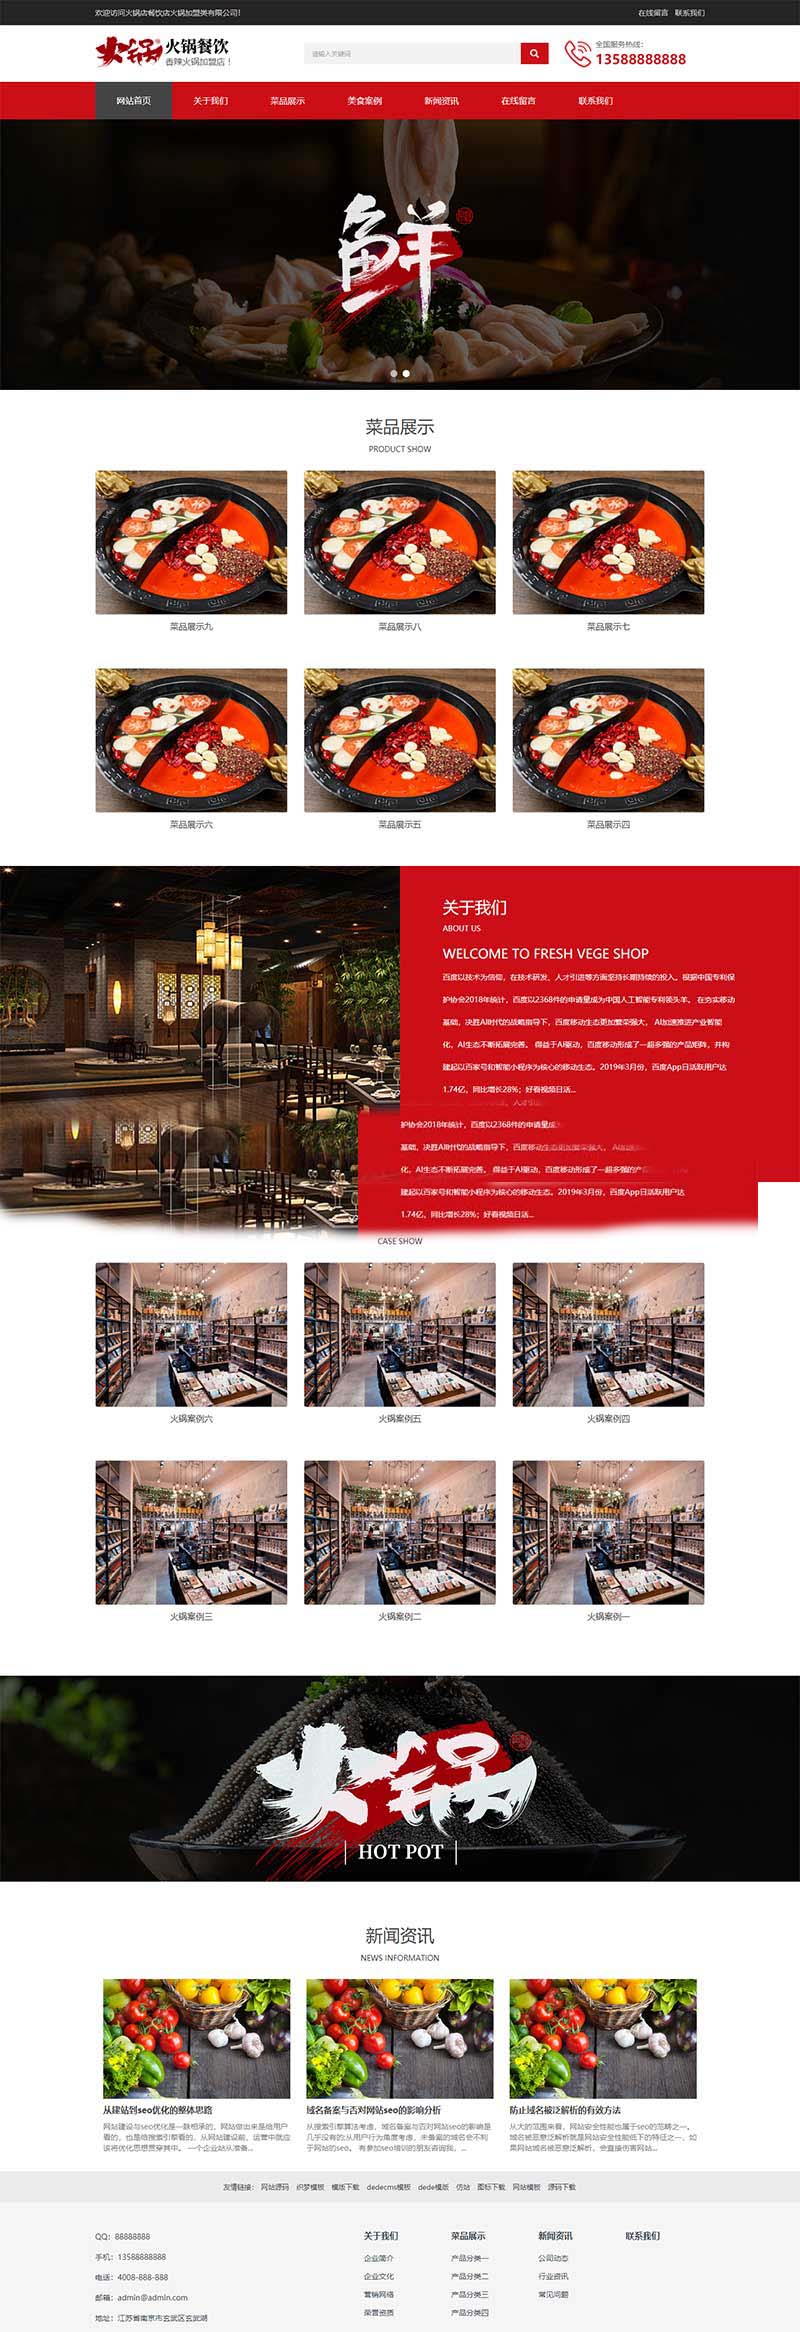 (自适应移动端)html5响应式餐饮行业特色小吃火锅店招商加盟网站电脑端模板展示图片